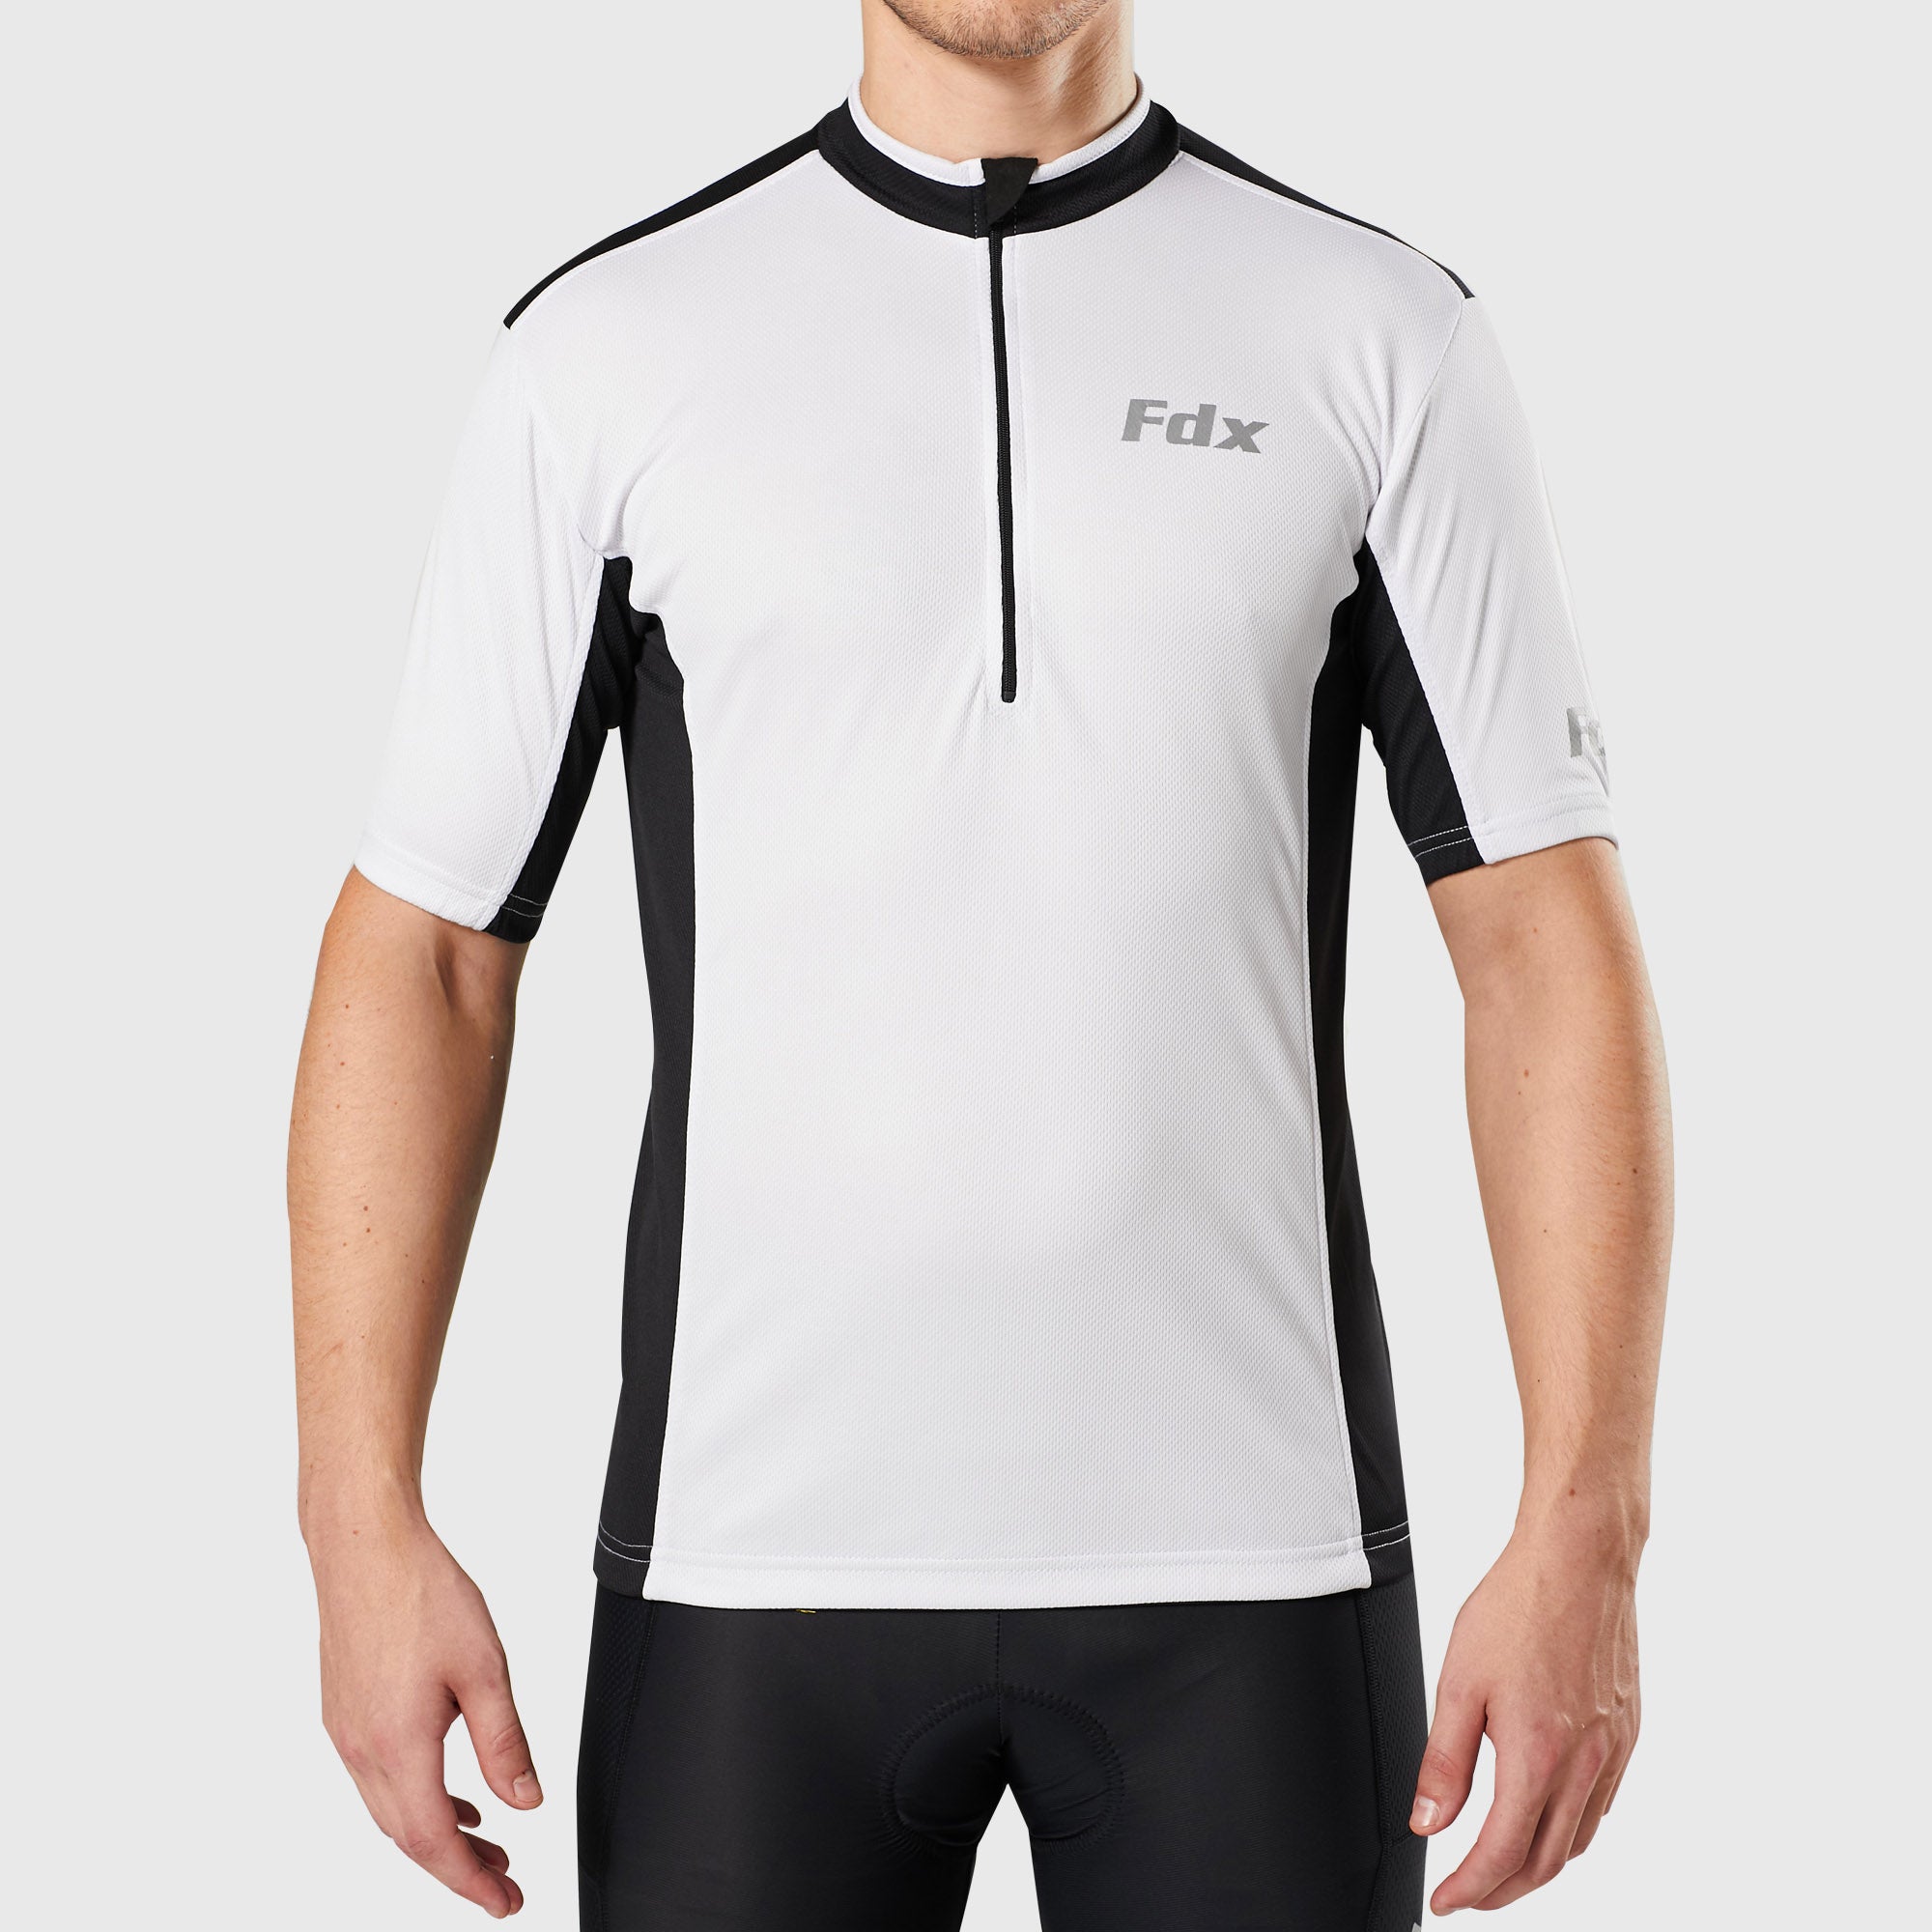 Fdx Mens White & Black Short Sleeve Cycling Jersey for Summer Best Road Bike Wear Top Light Weight, Full Zipper, Pockets & Hi-viz Reflectors - Vertex